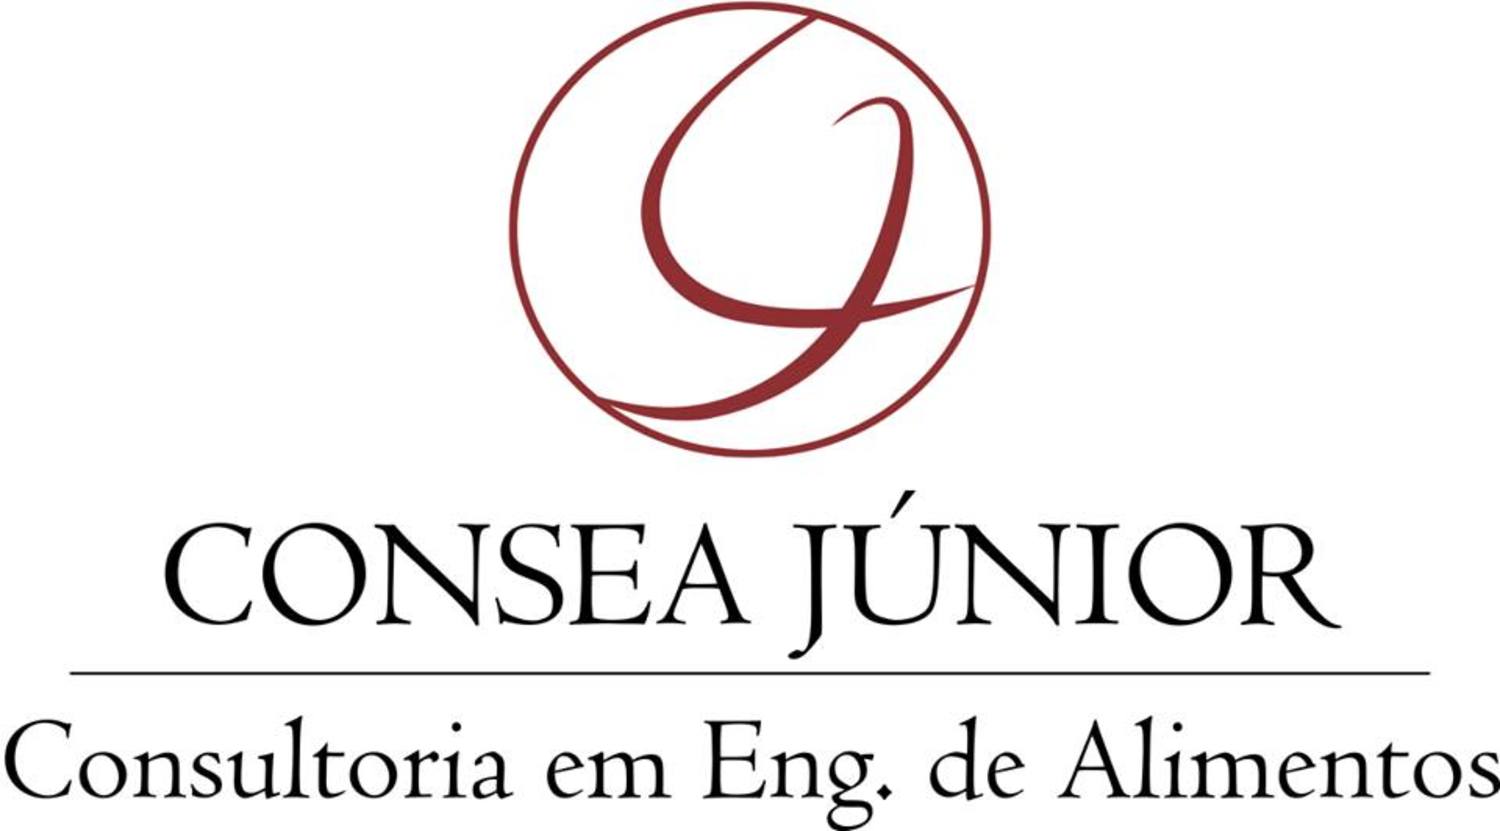 Consea Júnior 